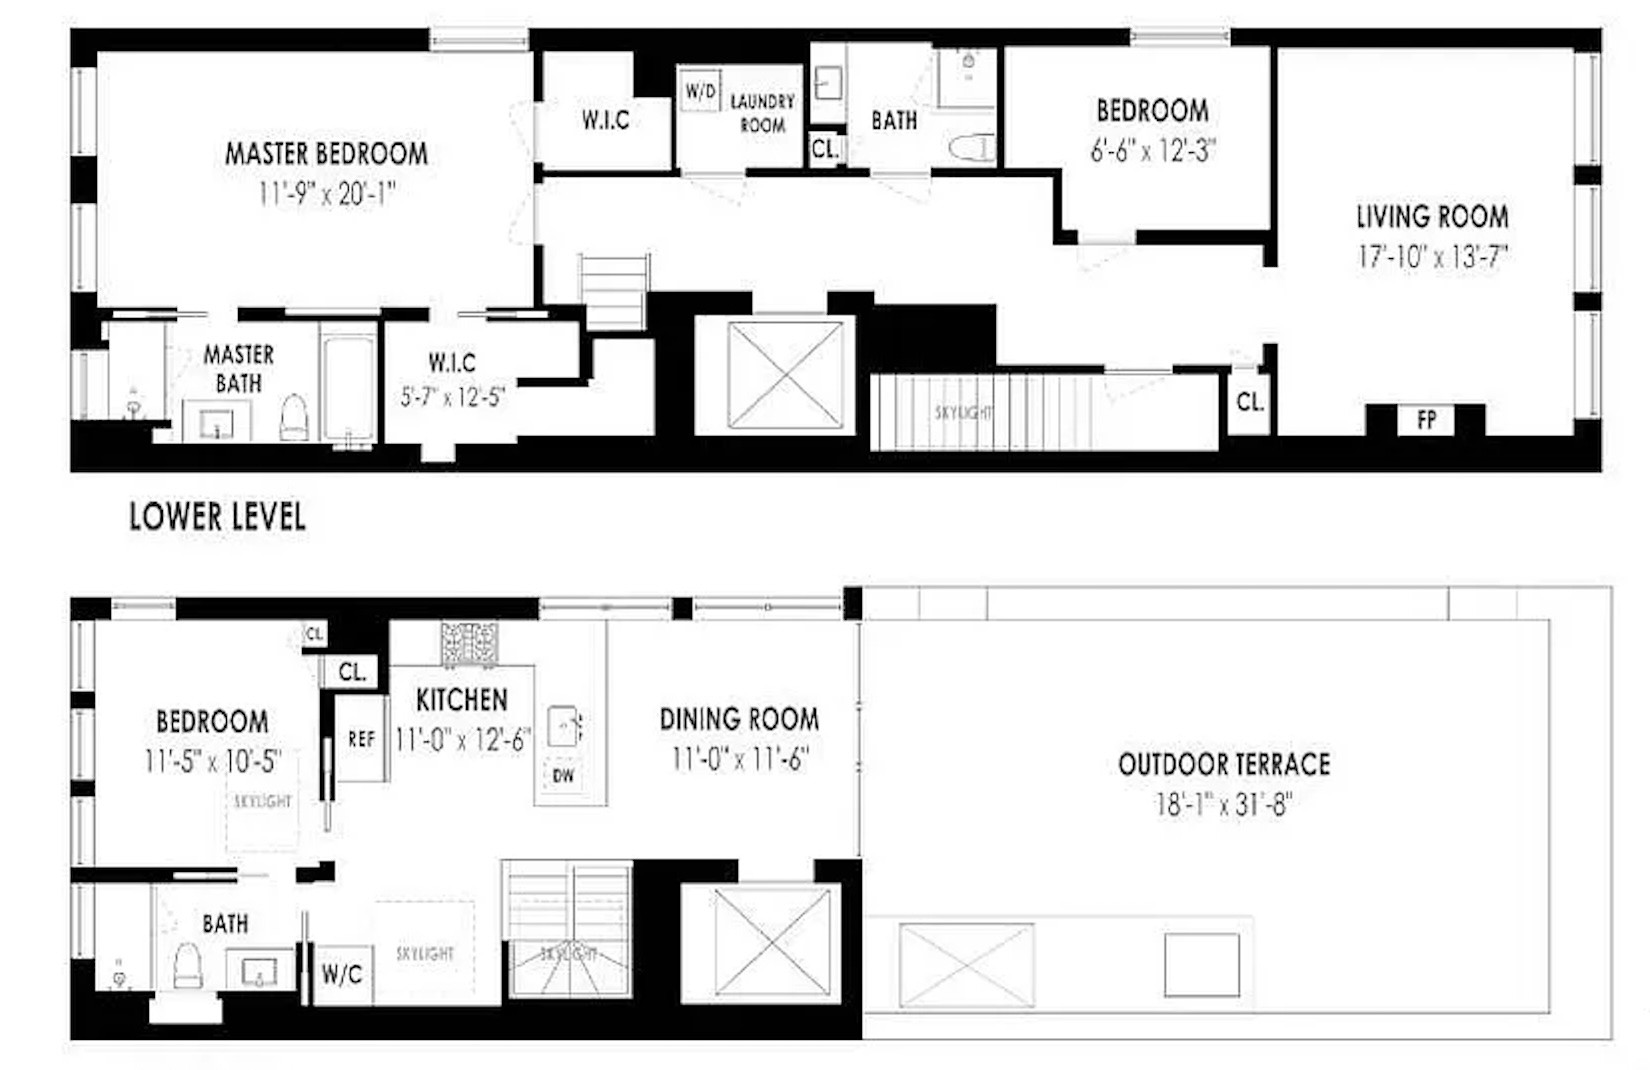 Floorplan for 498 Broome Street, PH